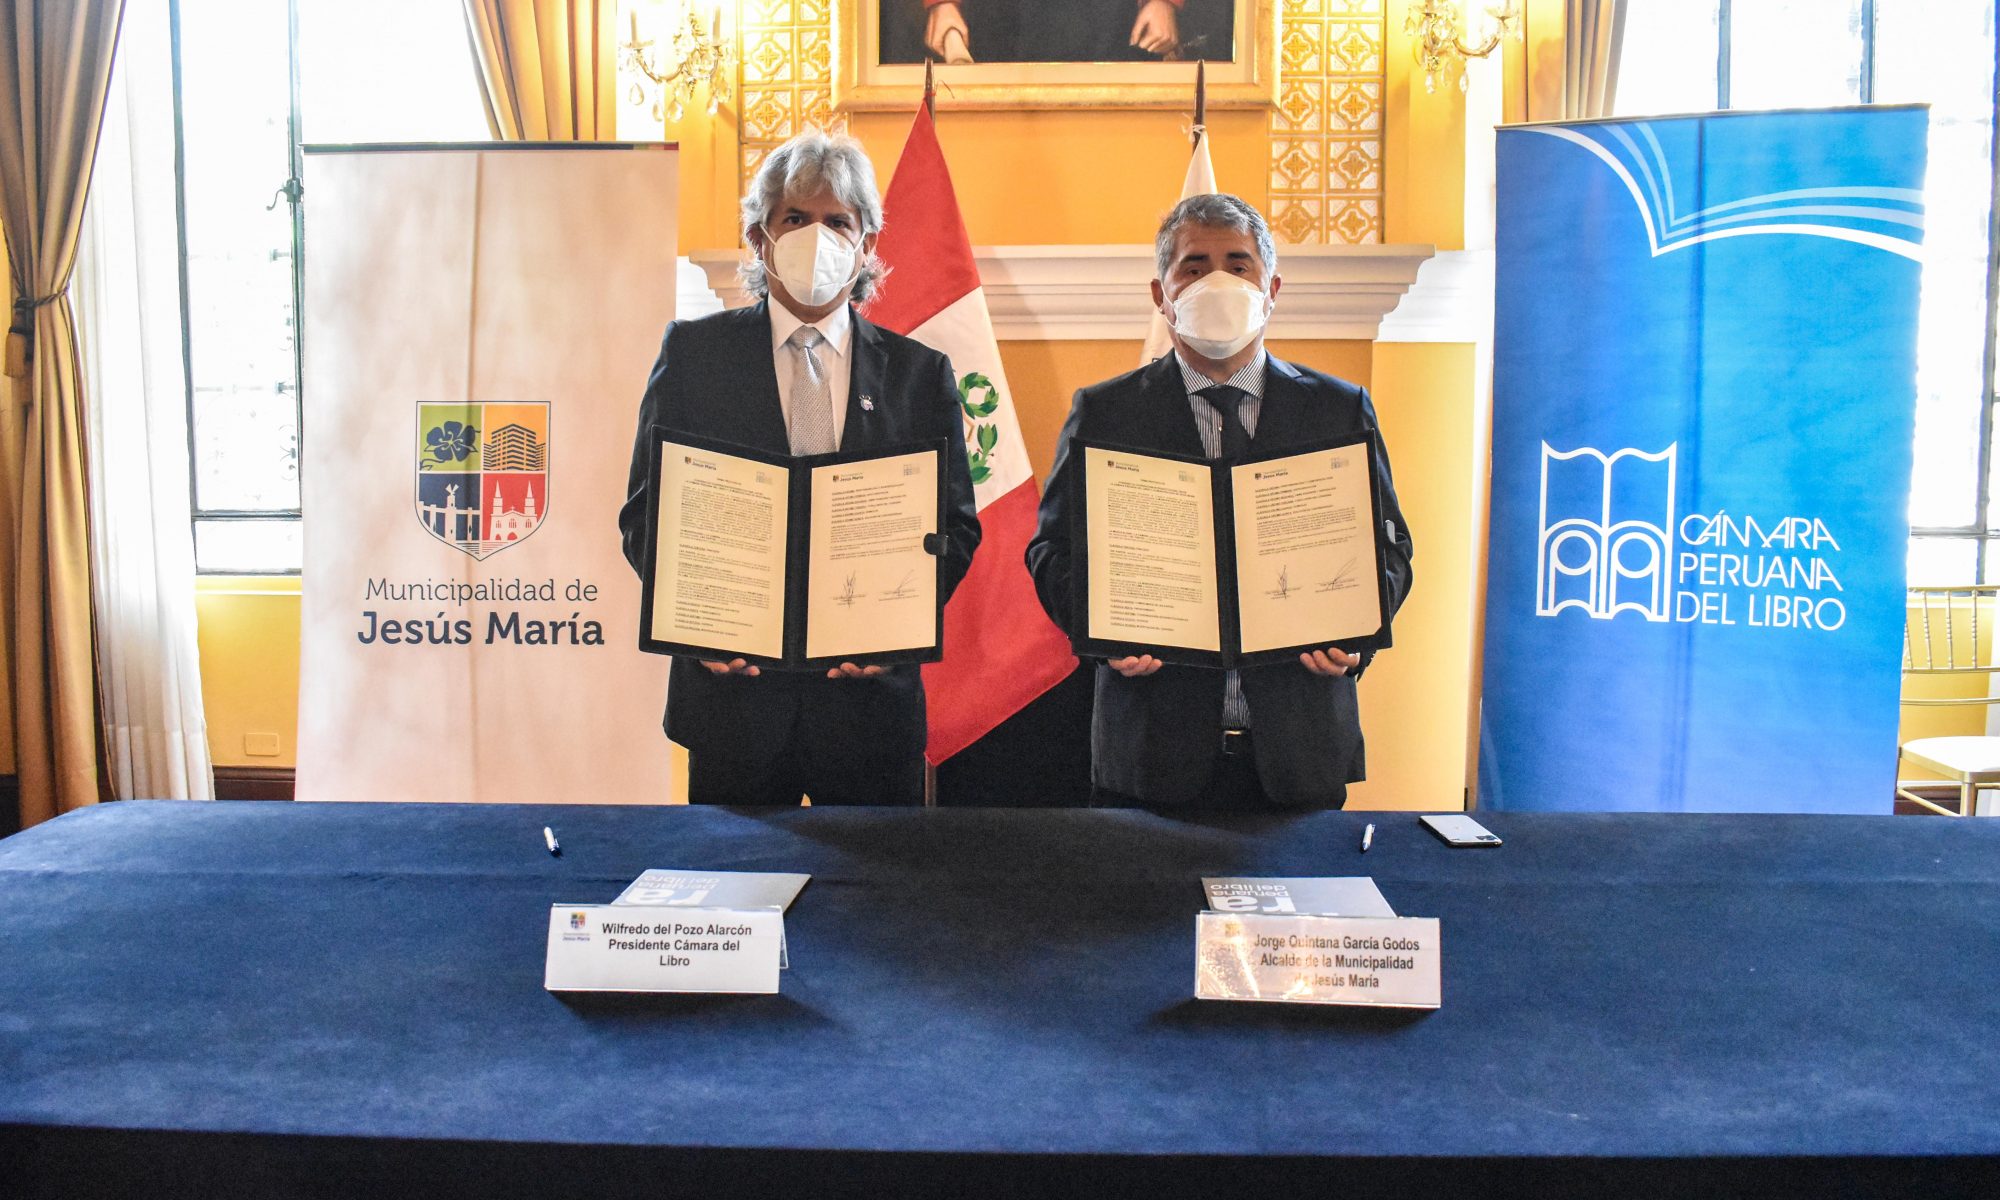 Foto donde se muestra al alcalde de Jesús María, Jorge Quintana, y al presidente de la Cámara Peruana del Libro, Willy Del Pozo, mostrando convenio firmado.